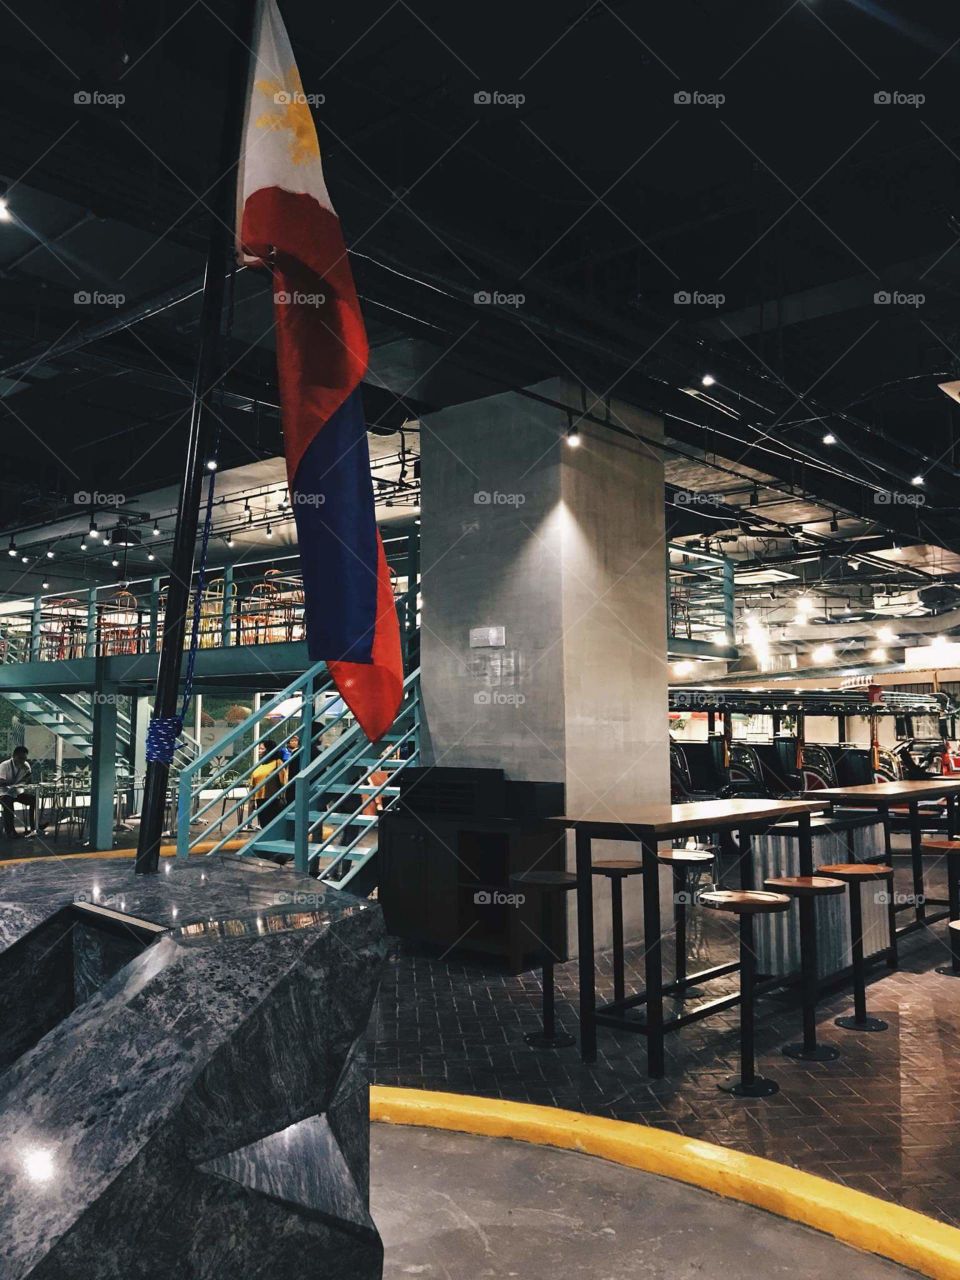 Philippine Flag inside the restaurant.